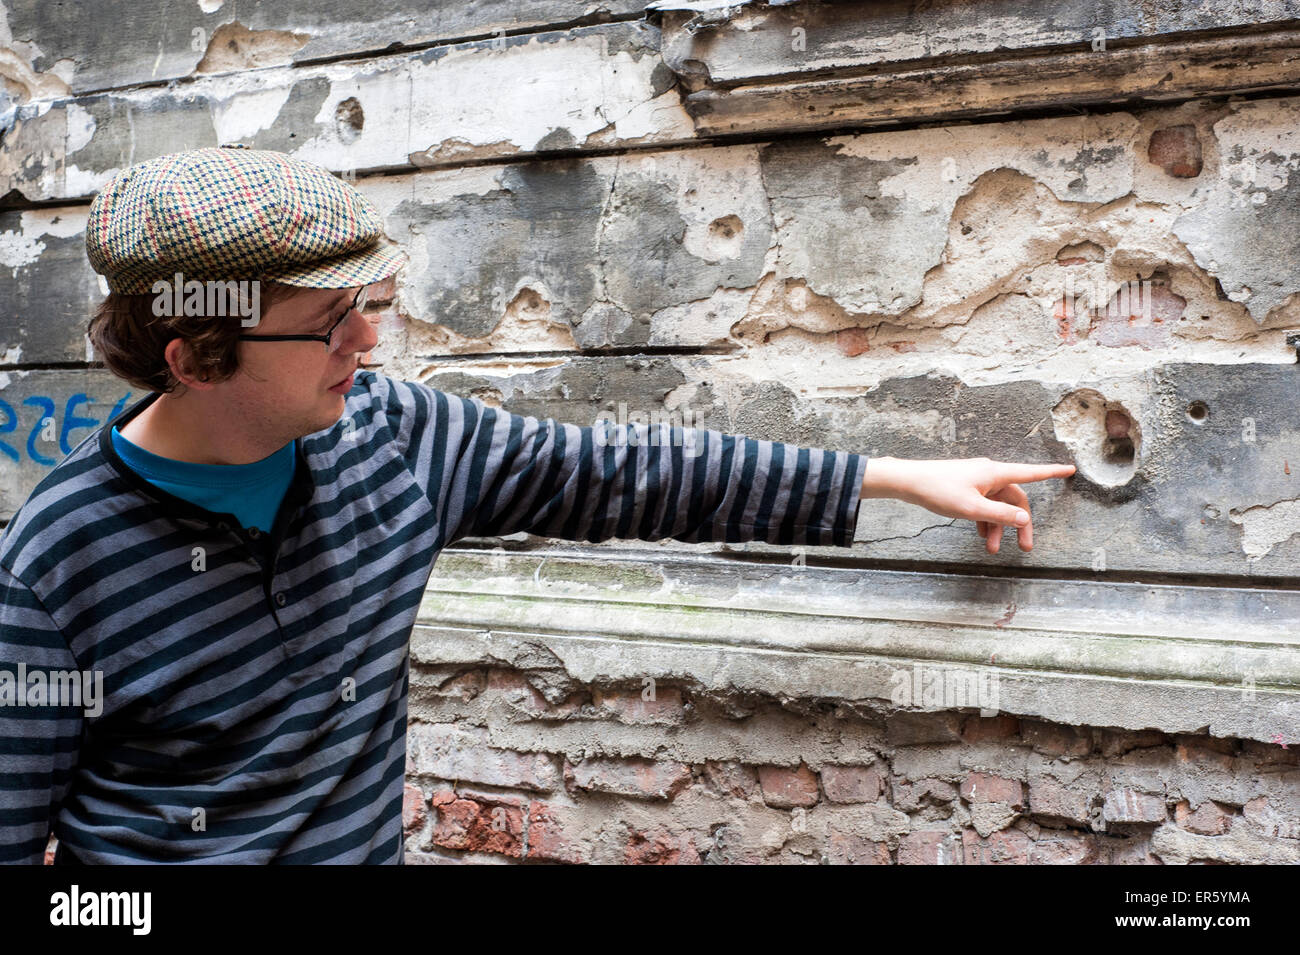 Man points à trous de balle dans un appartement occupé des édifices endommagés pendant la Seconde Guerre mondiale, Hoza street, Varsovie, Pologne, Europe Banque D'Images